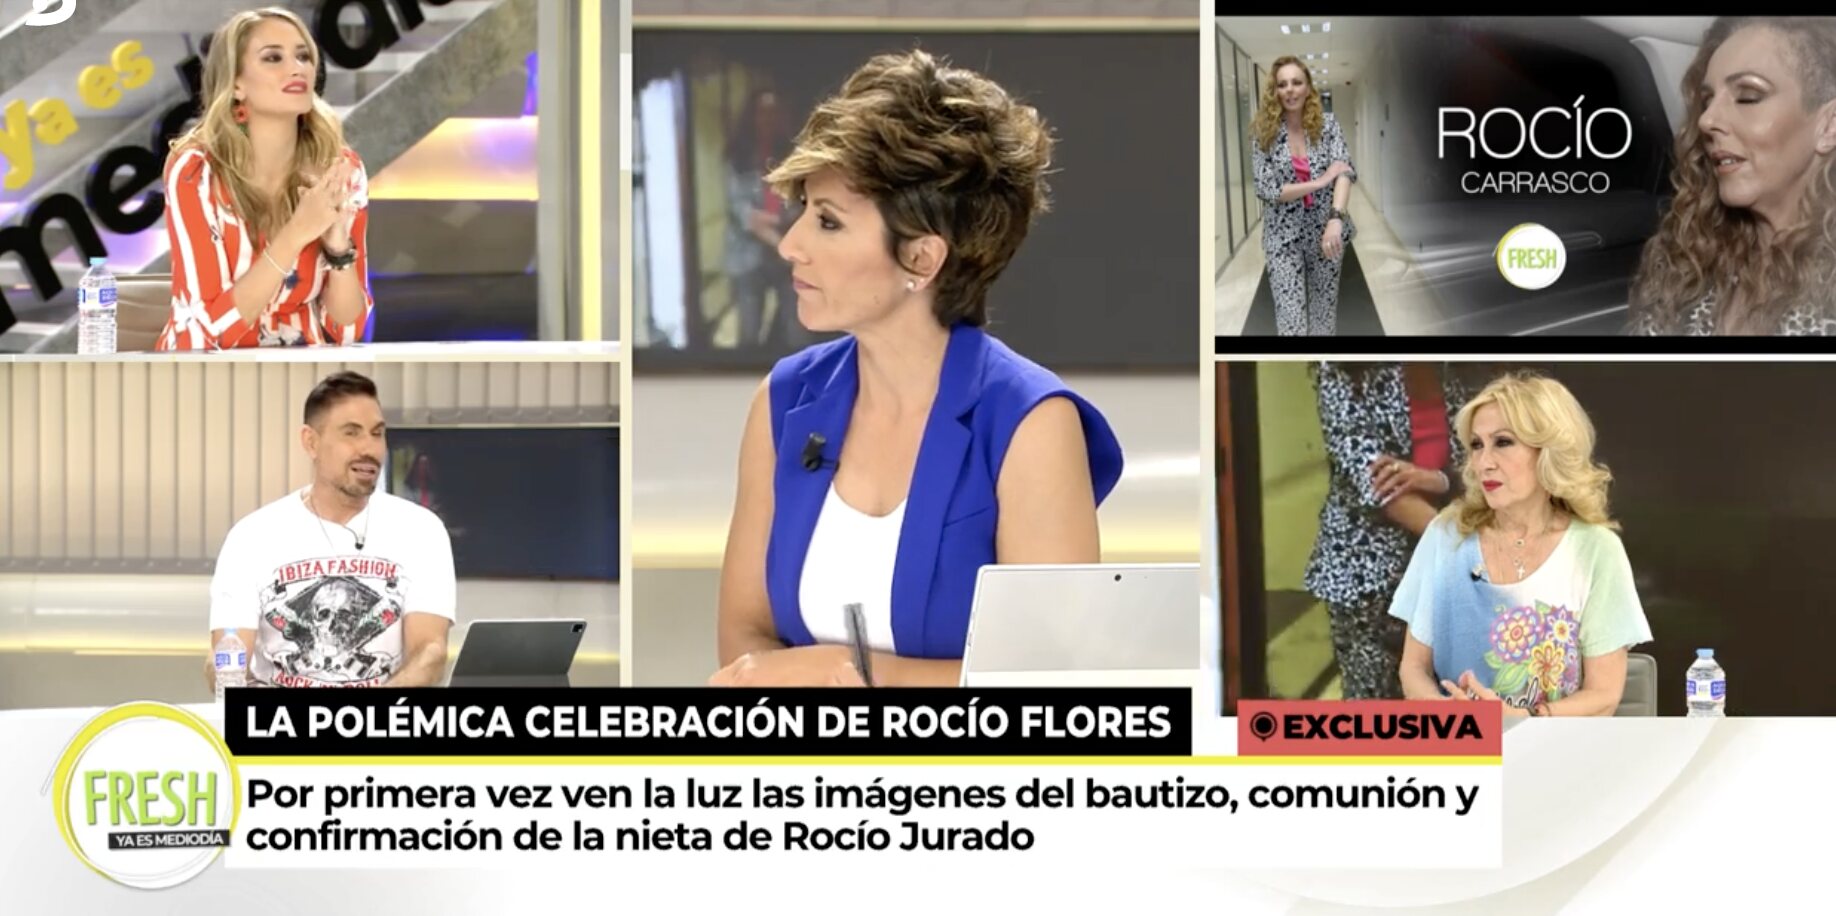 Rocío Carrasco no tenía constancia de que se iba a celebrar | Foto: Telecinco.es